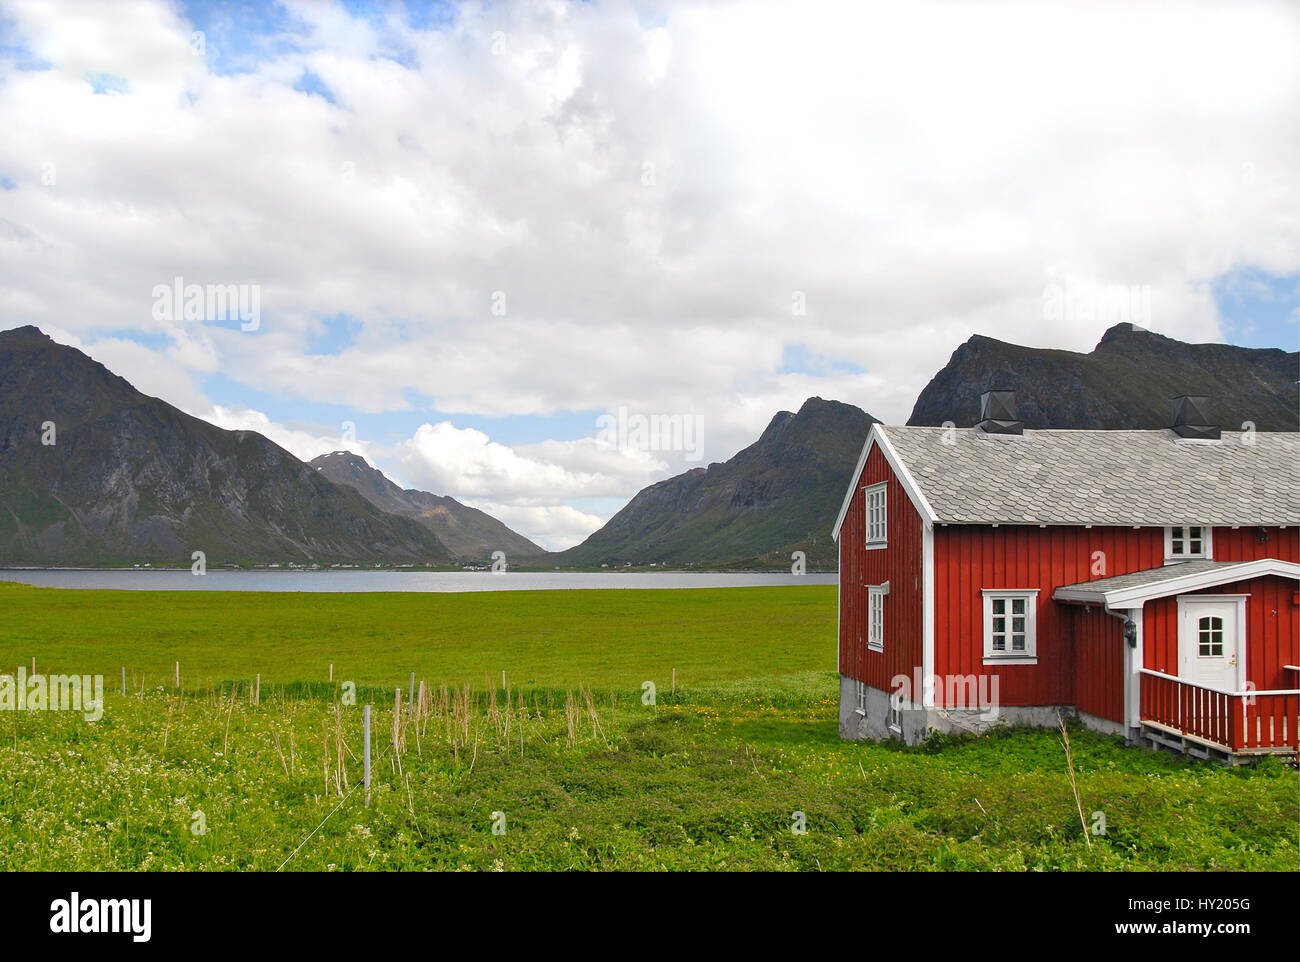 L'immagine mostra un colore verde intenso terreno coltivato con un rosso tipicamente scandinavo colorata Casa in Forefront. In fondo è un piccolo fiordo con un moun Foto Stock